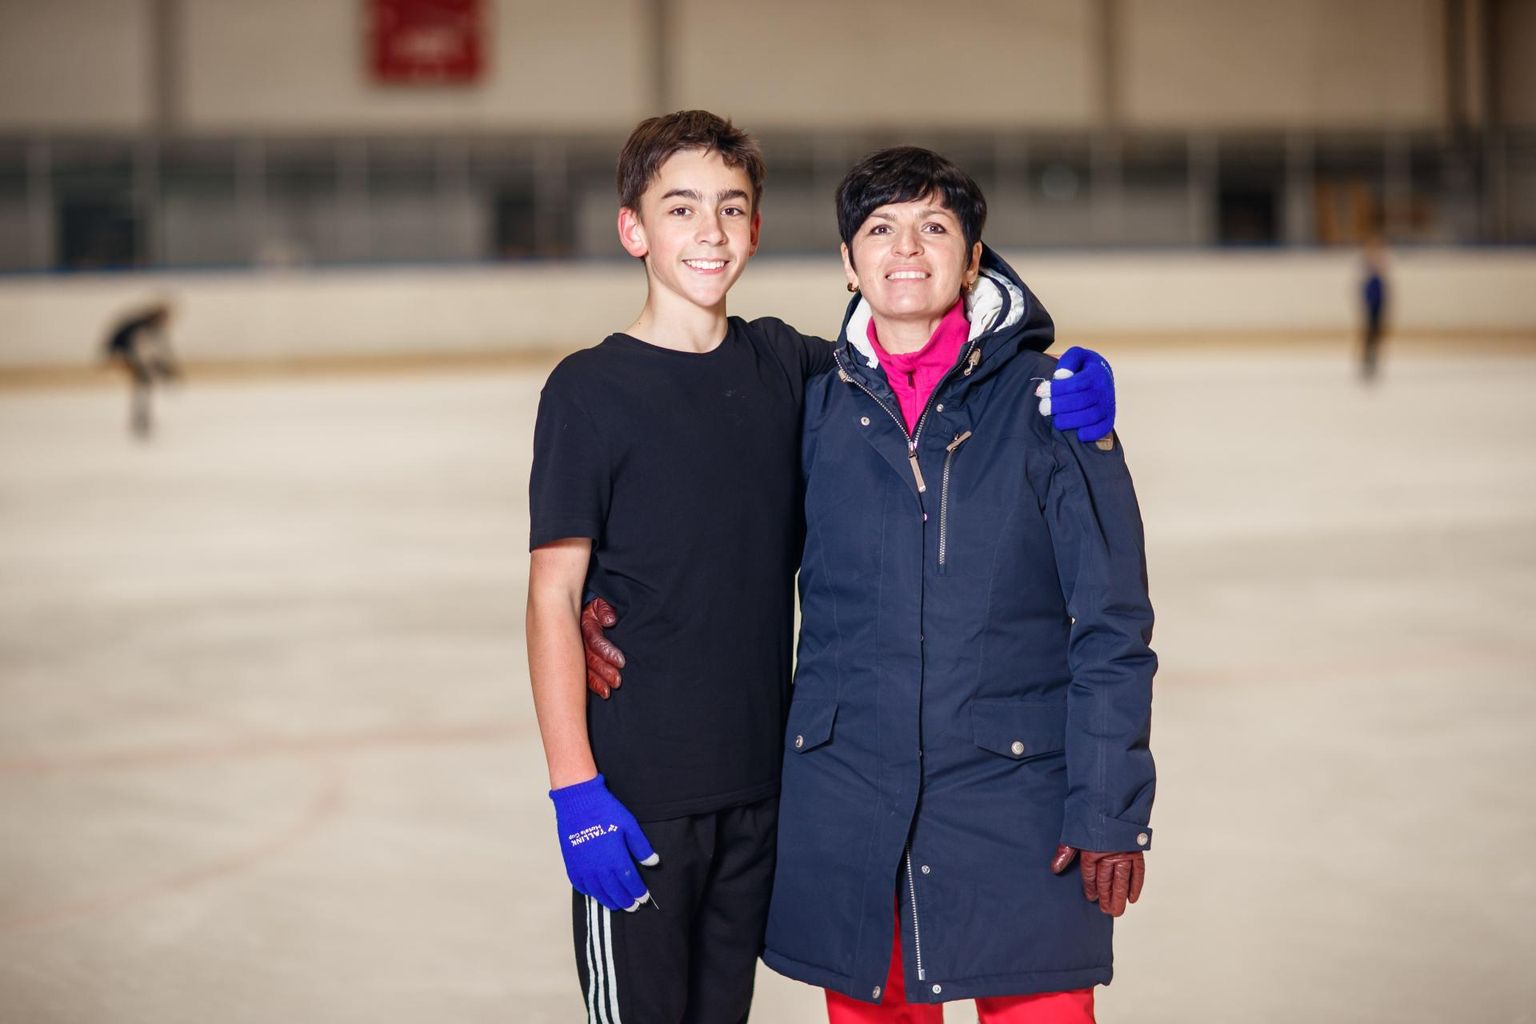 Iluuisutamistreener Anna Levandi ning tema 14-aastane poeg Arlet peavad plaani, kuidas ühendada saavutussport ja haridustee.
 